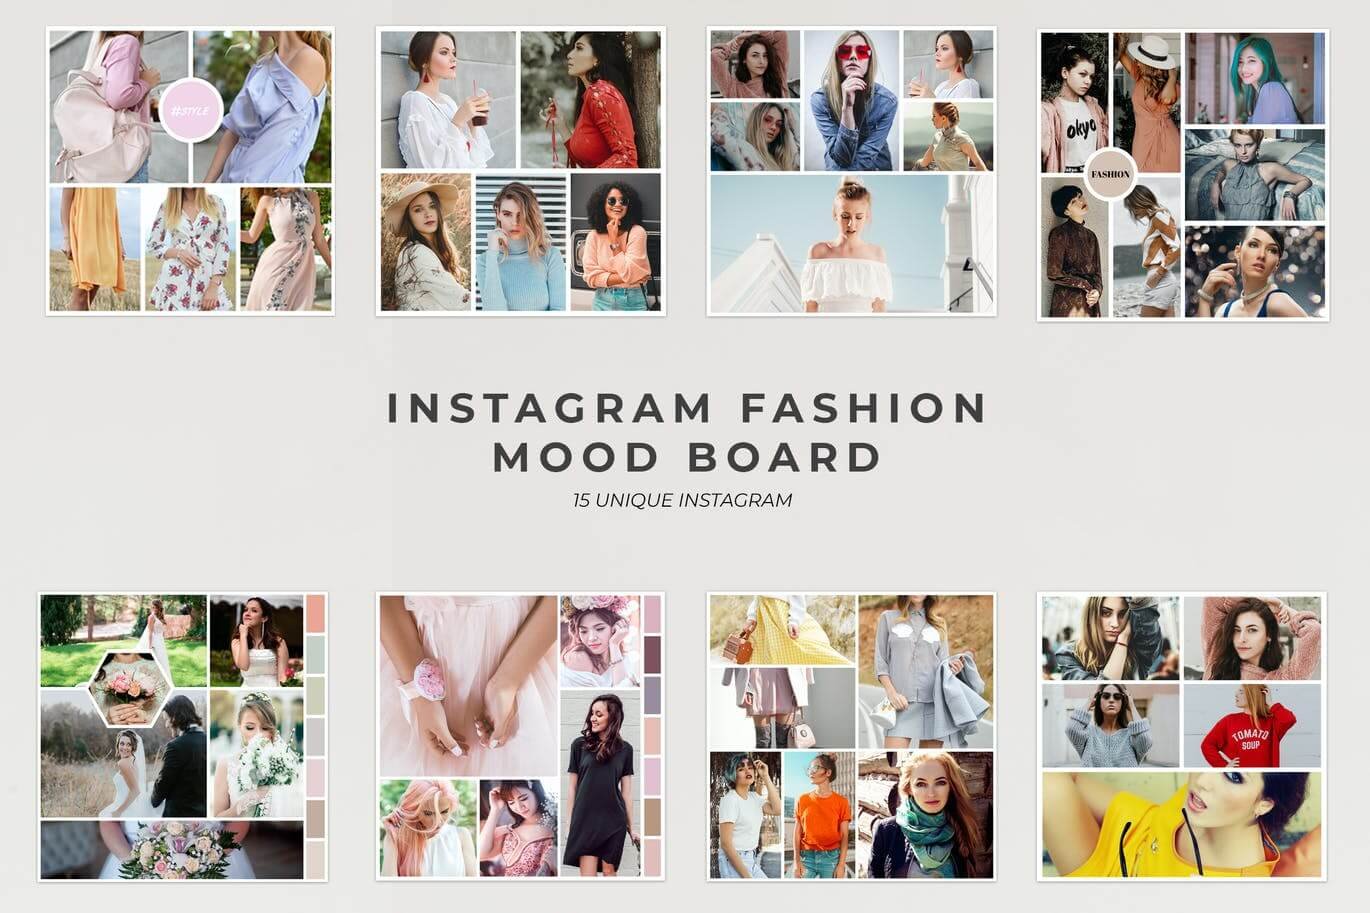 Instagram Fashion Mood Board